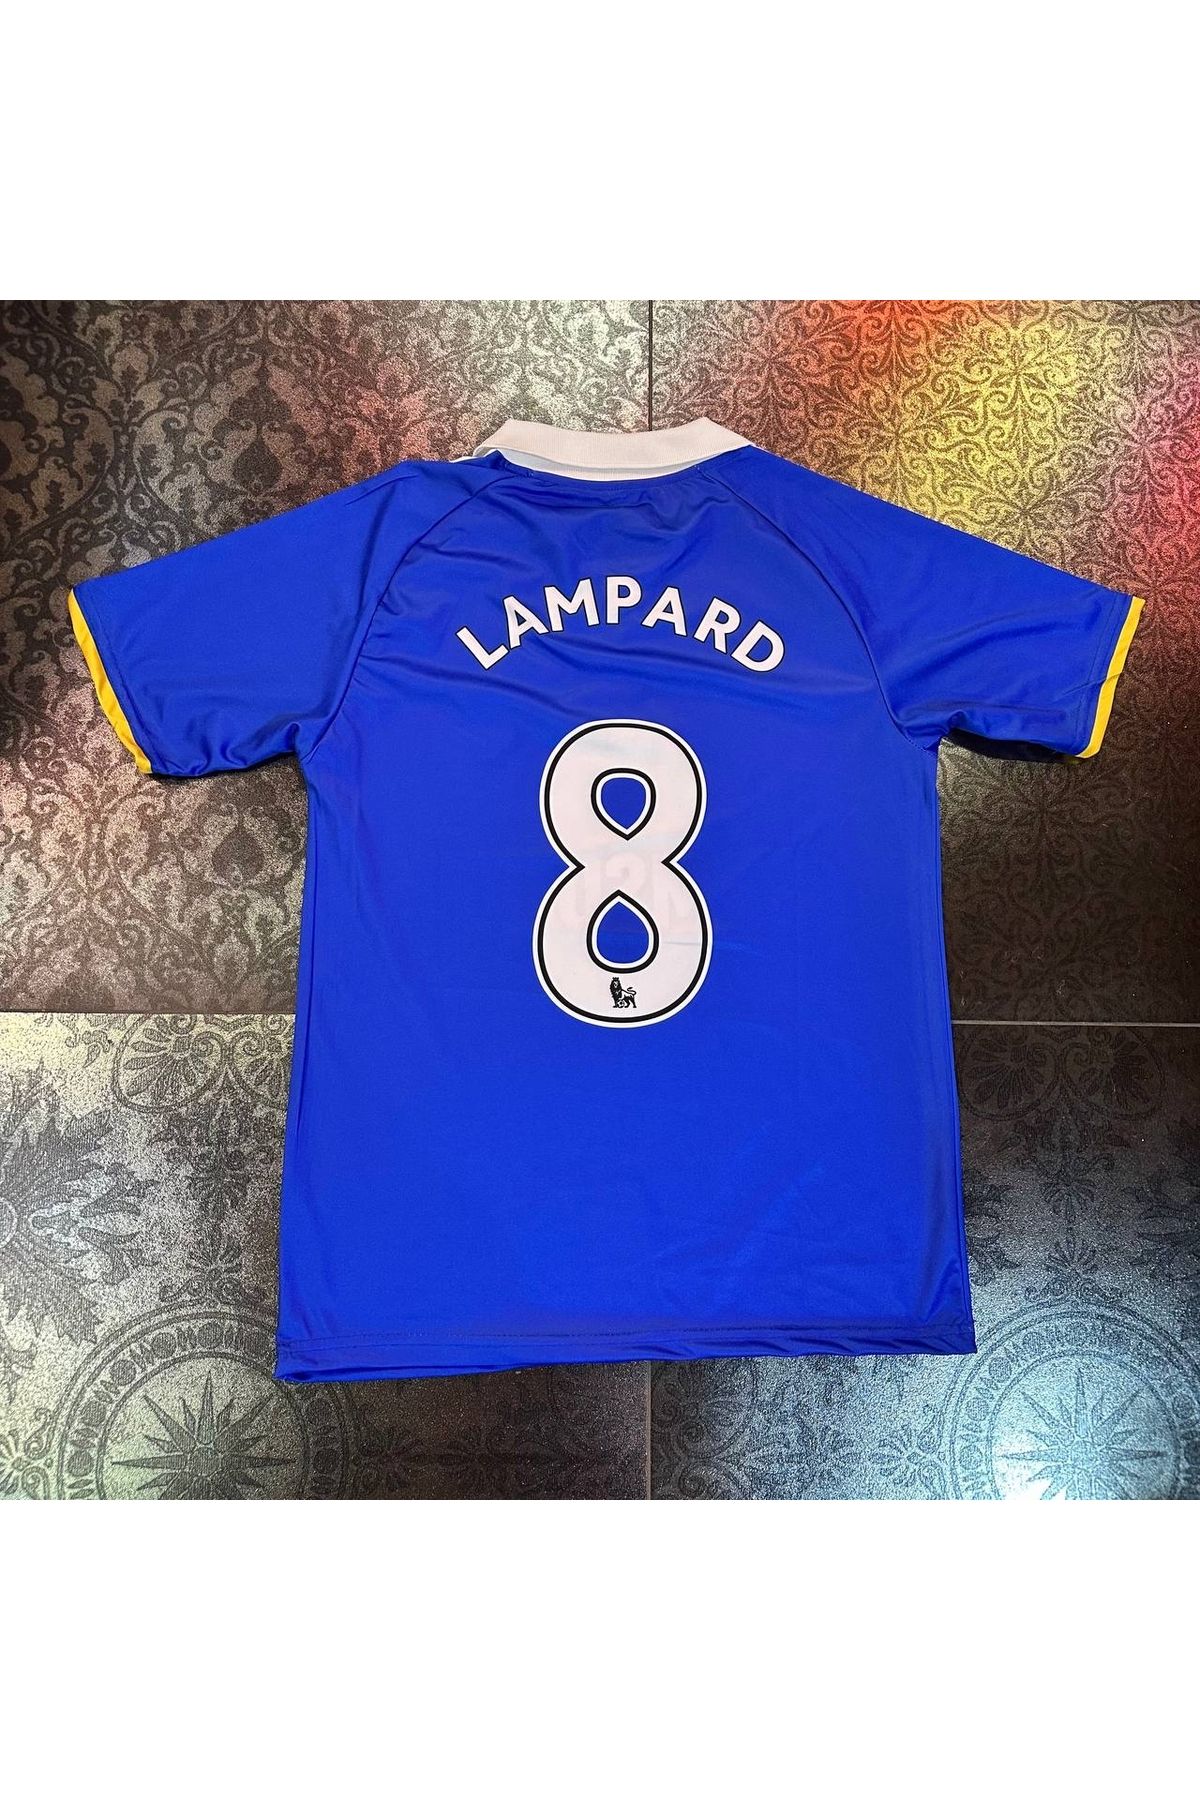 VİRALSEPETİM Chelsea Lampard Nostalji Şampiyonlar Ligi 8 Numara Forması